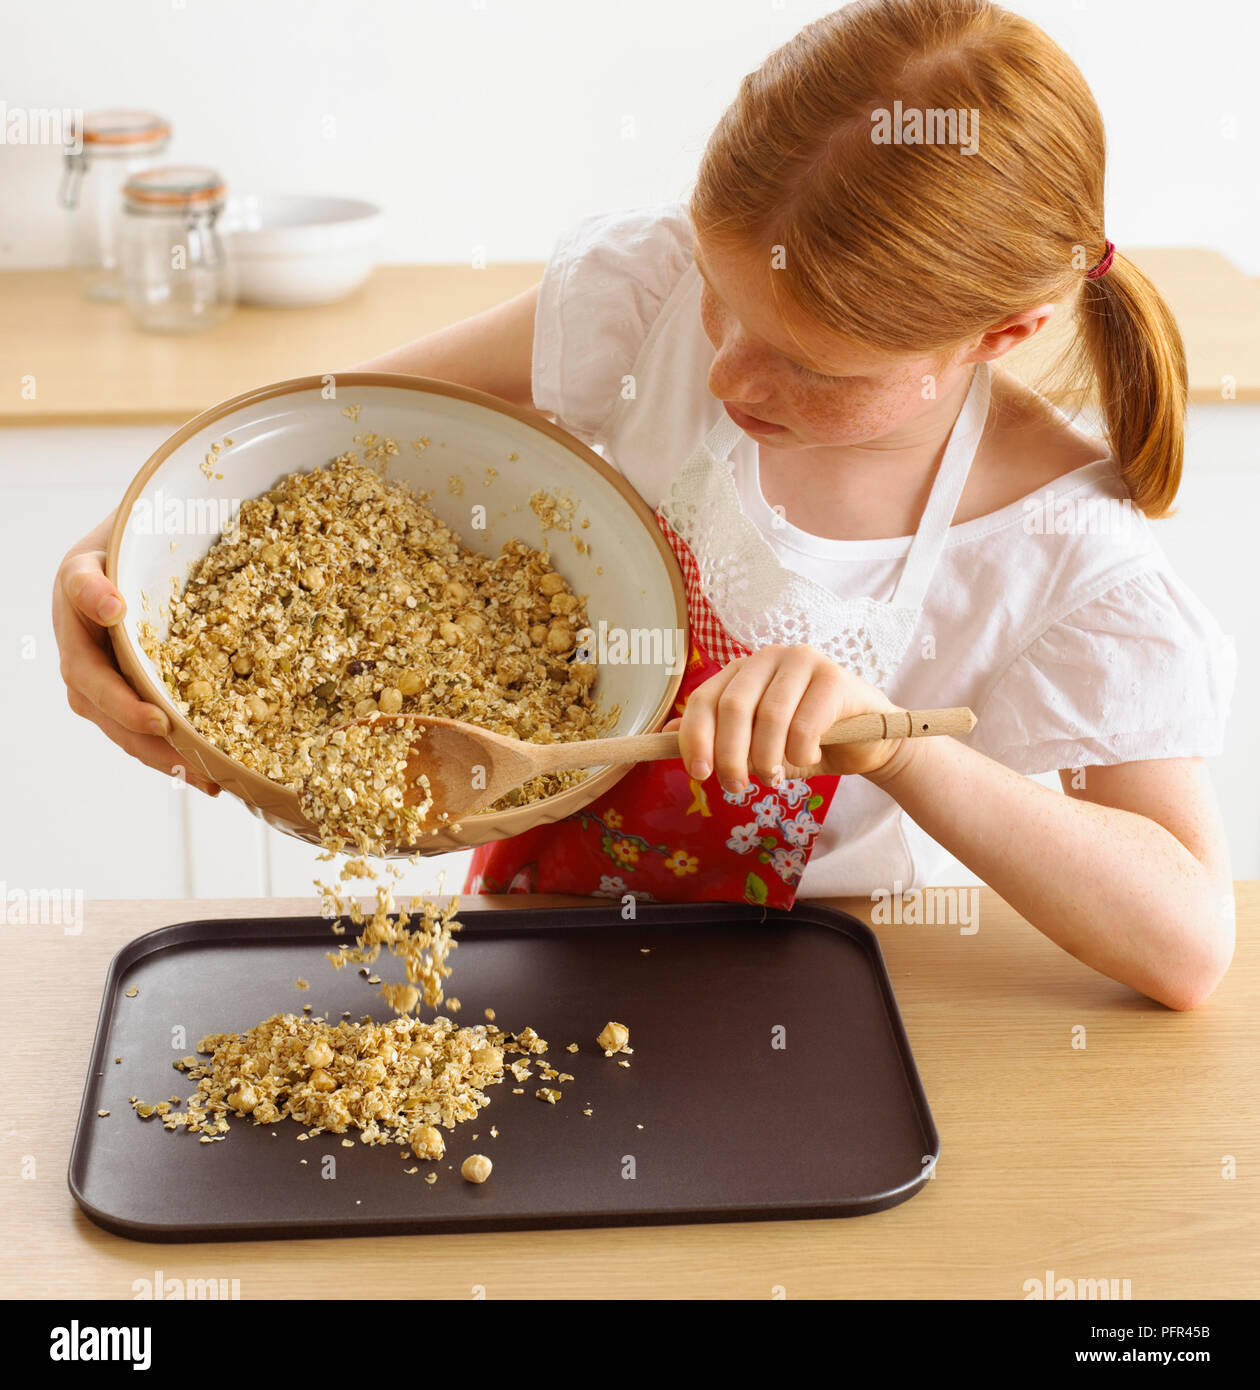 Chica colocando la mezcla de cereal en la bandeja para hornear, 9 años Foto de stock